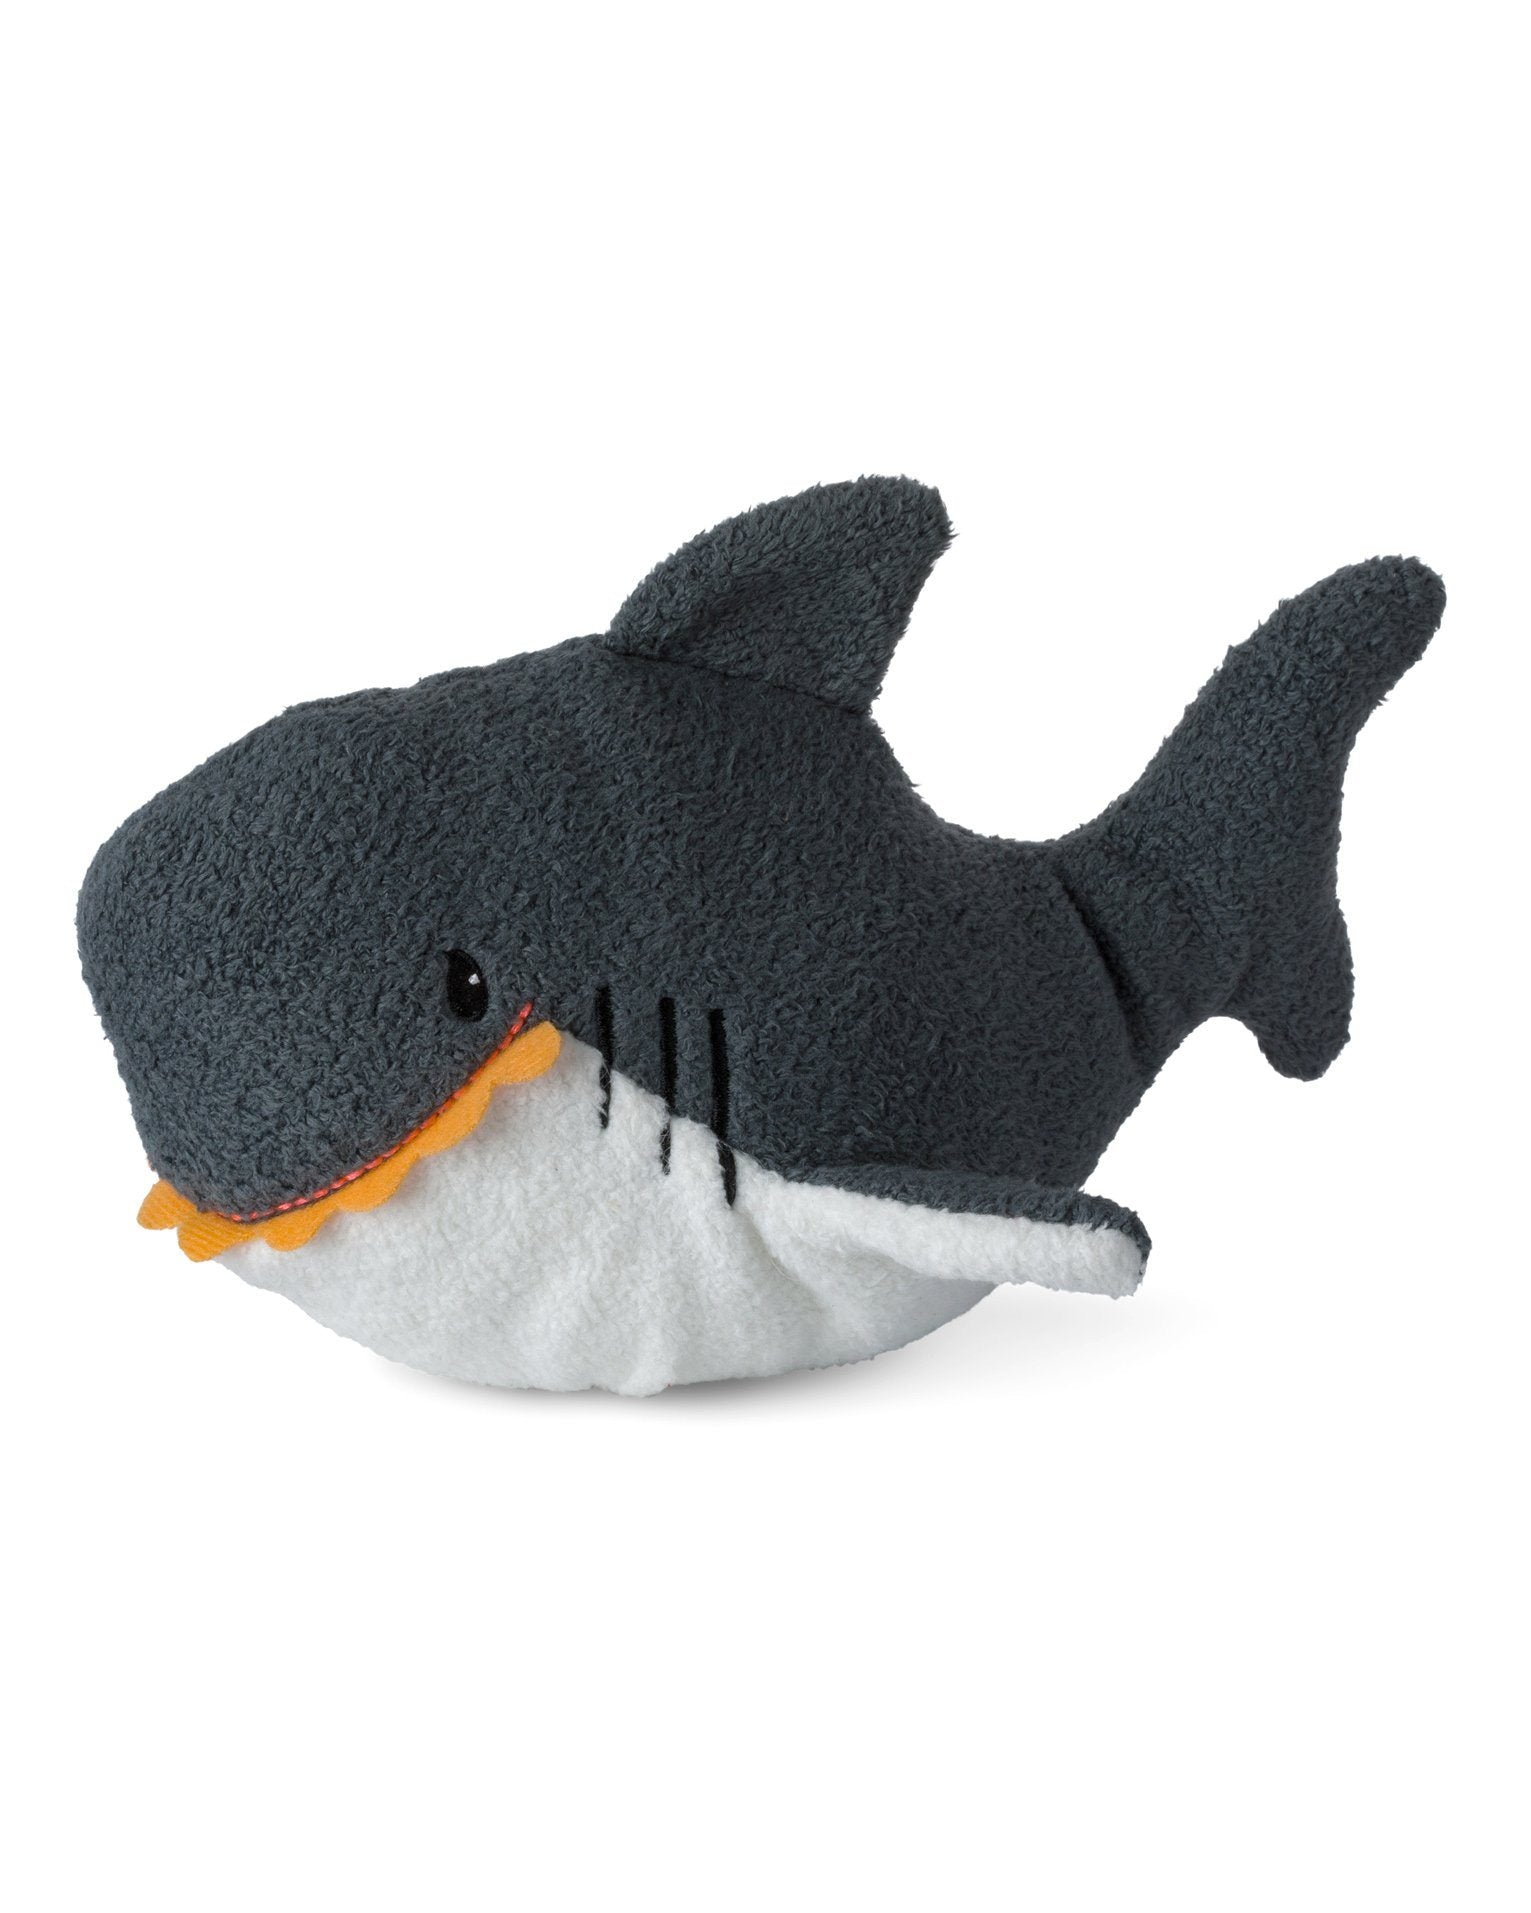 Sal the Shark Plush Toy - Grey - Toy - WWF Cub Club